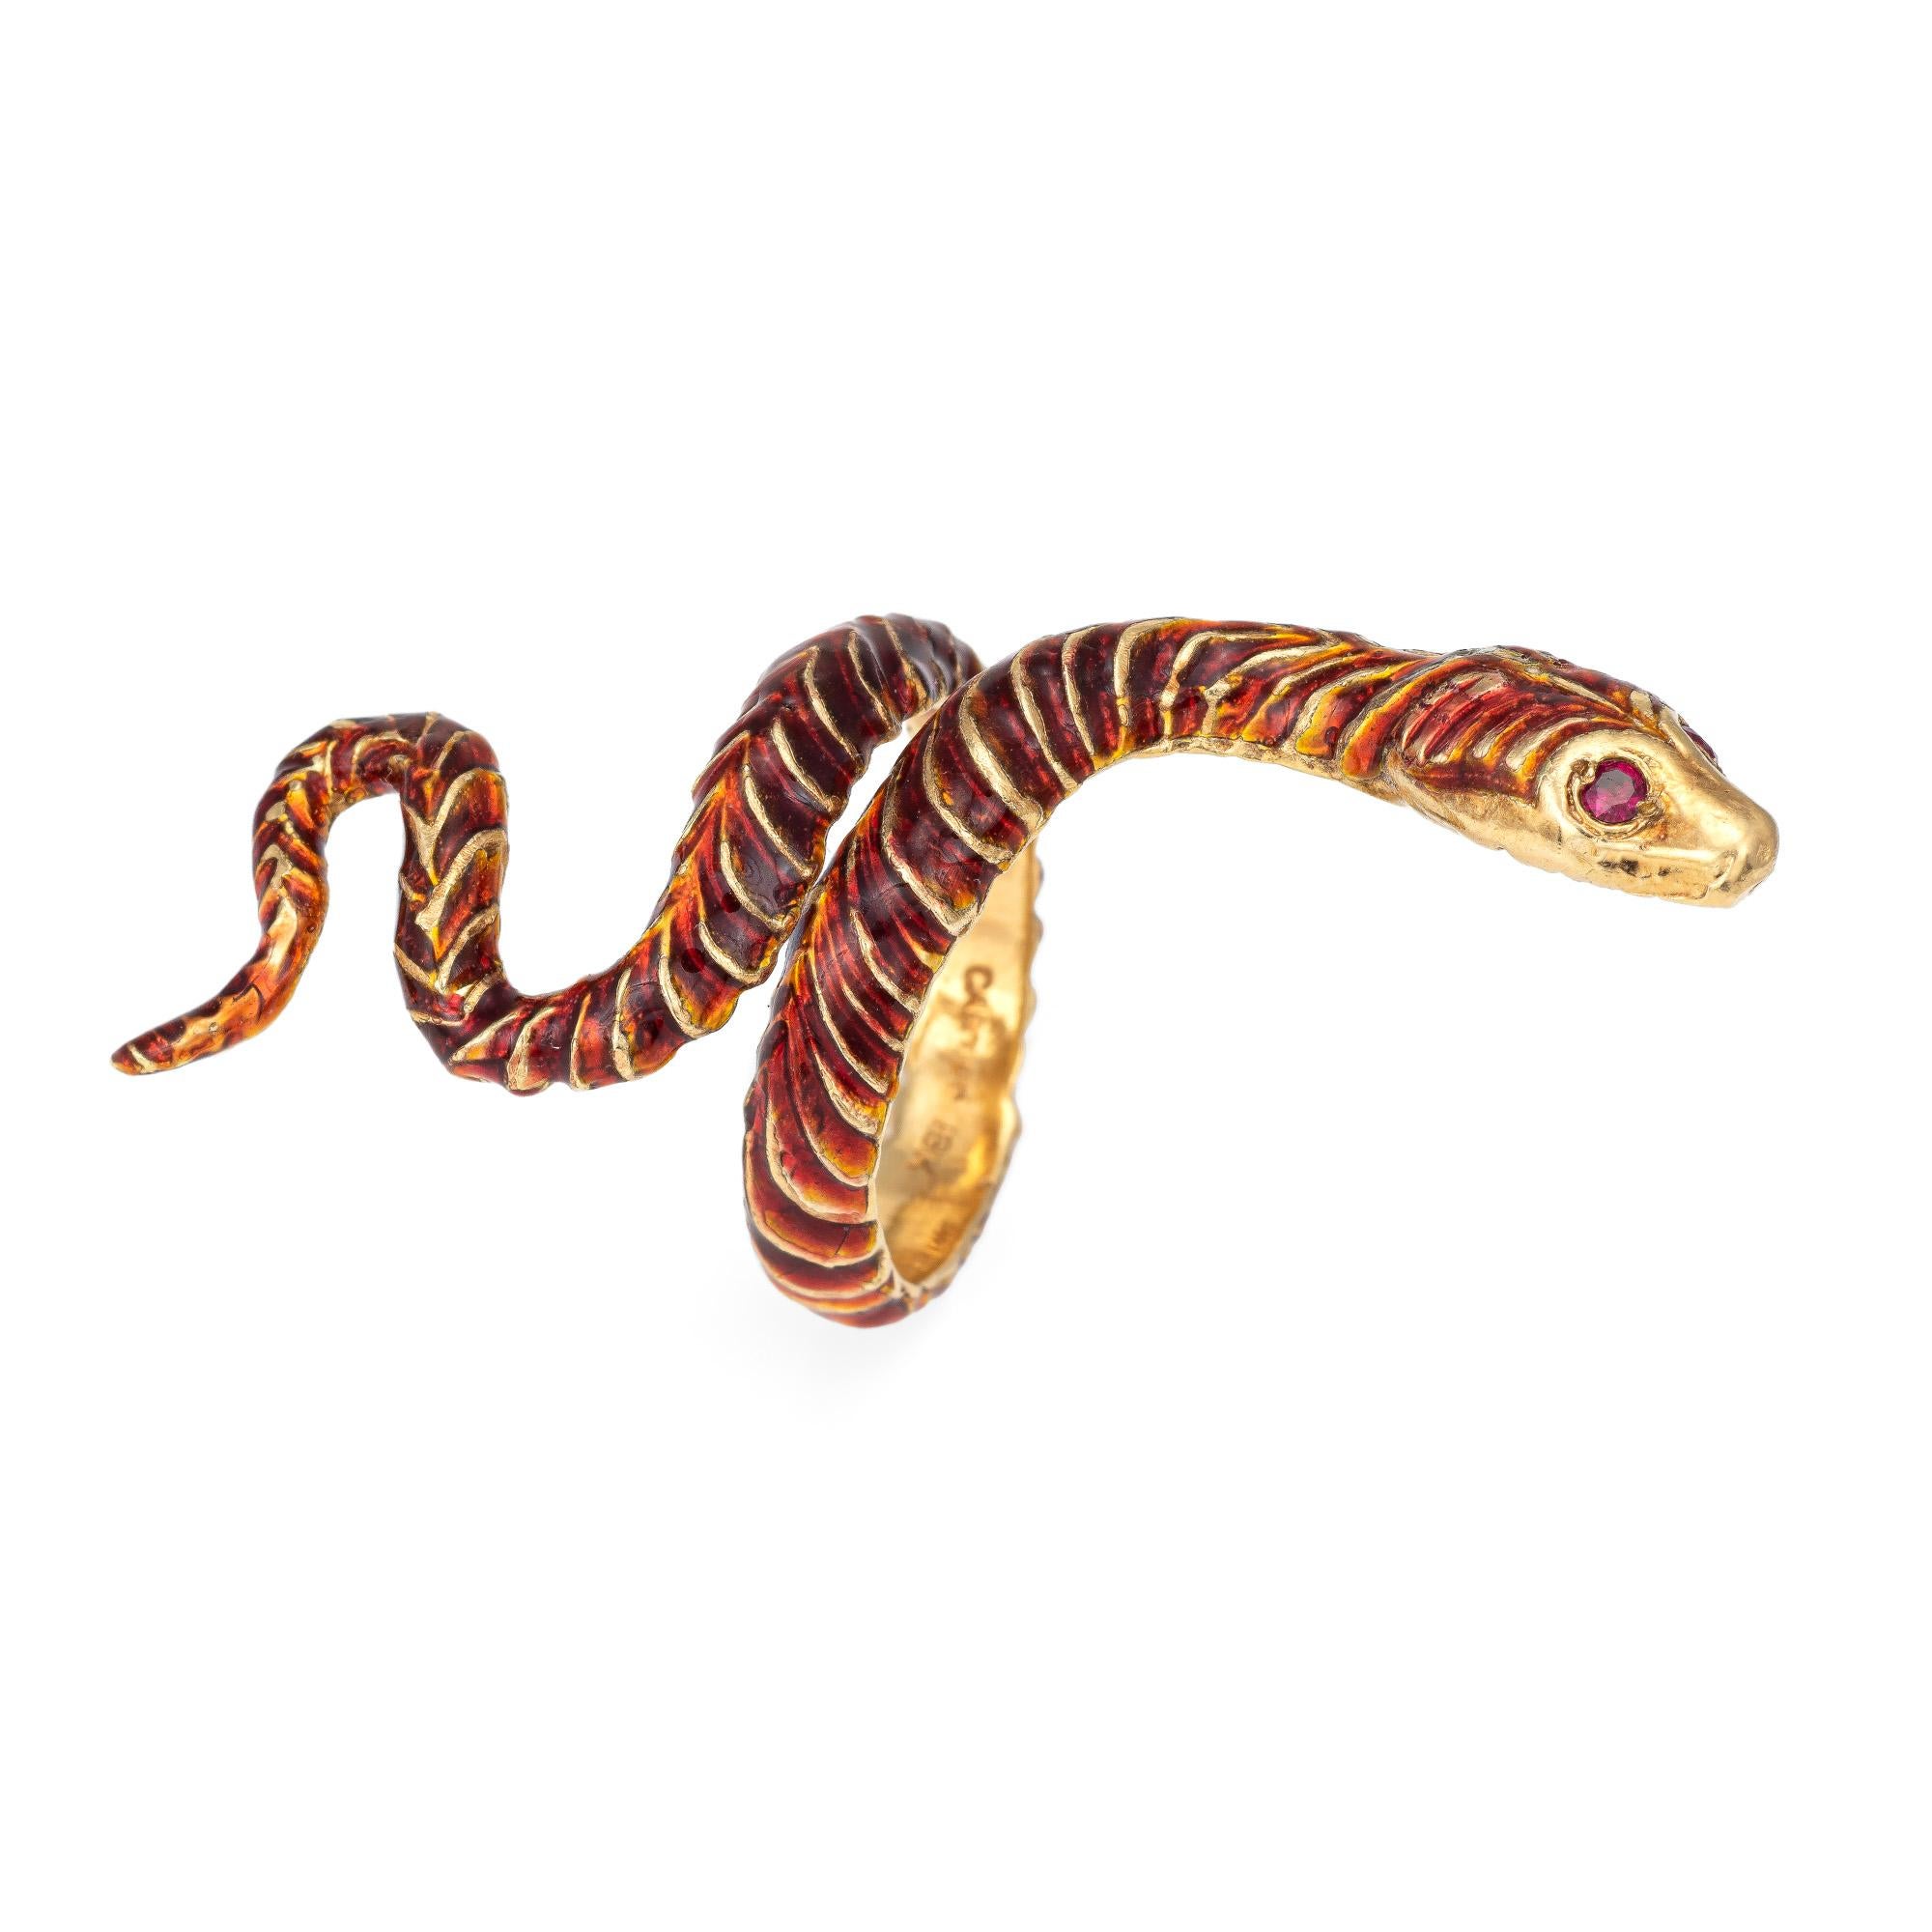 Bague vintage de Cartier en or jaune 18 carats (circa 1970).  

Le serpent élaboré, avec sa forme sinueuse et serpentine, mesure 2 pouces de long (du nord au sud) et fait une déclaration audacieuse sur la main ! L'émail rouge et orange feu ajoute